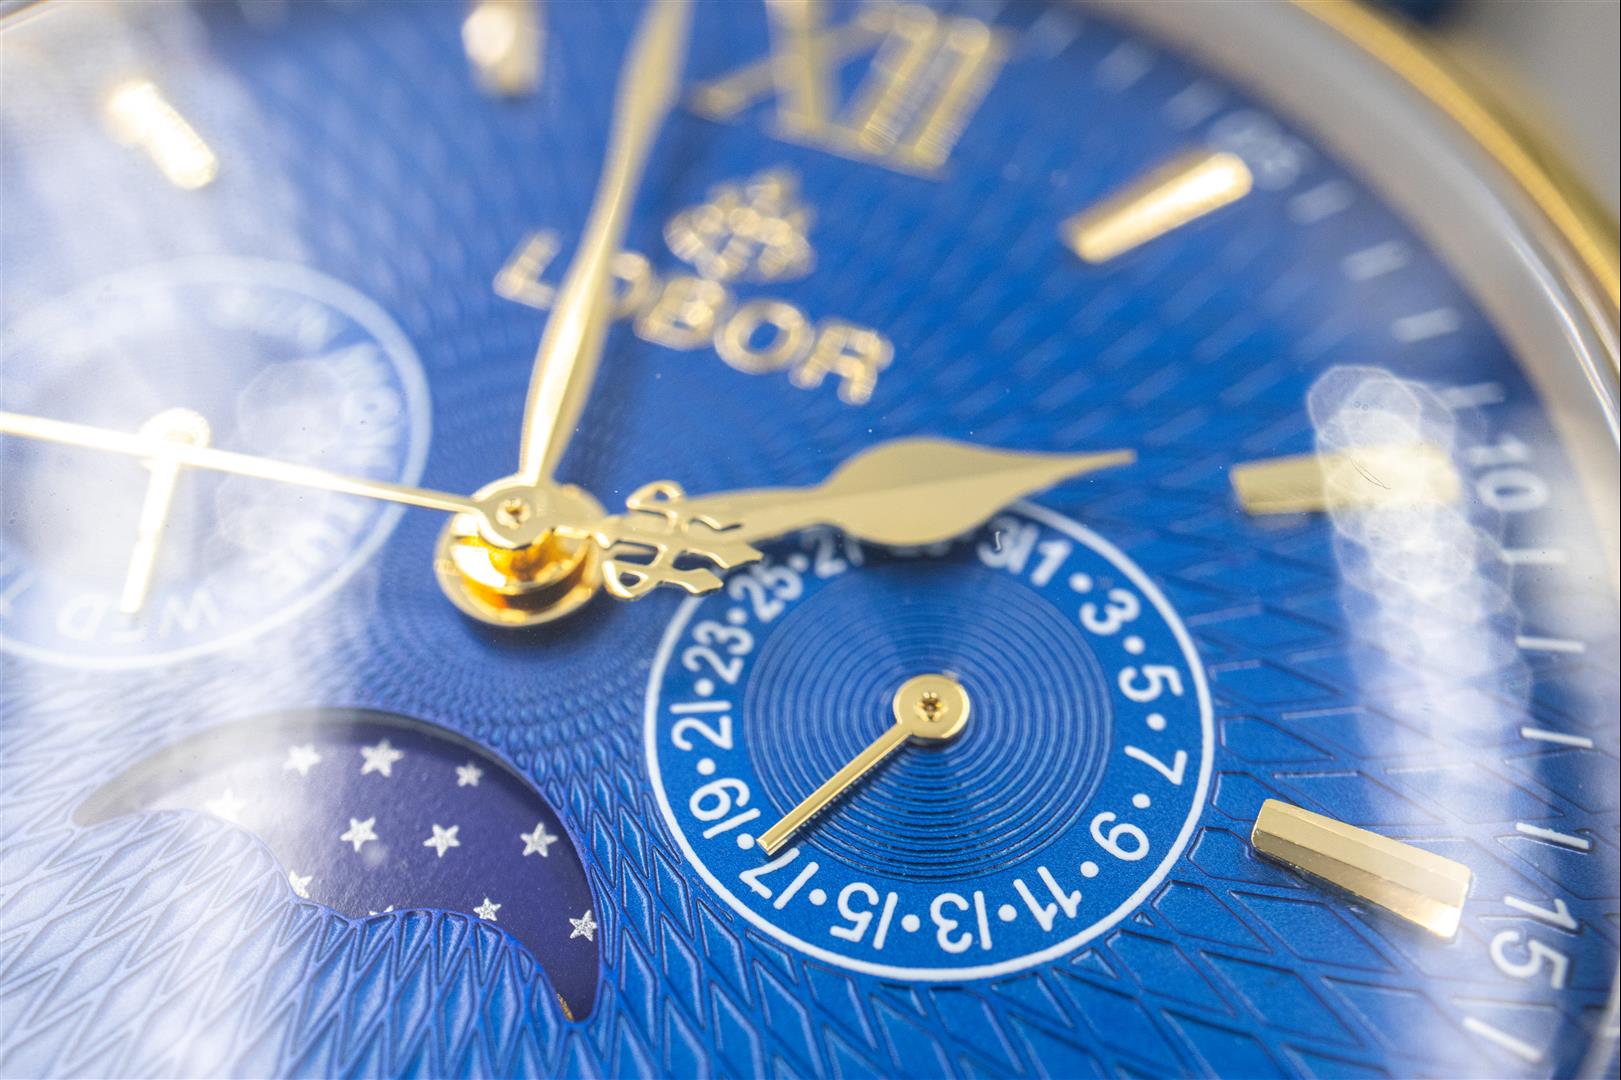 LOBOR 腕表 - 當你更在意時間的價值，配戴的不只是腕錶，而是一種自律態度